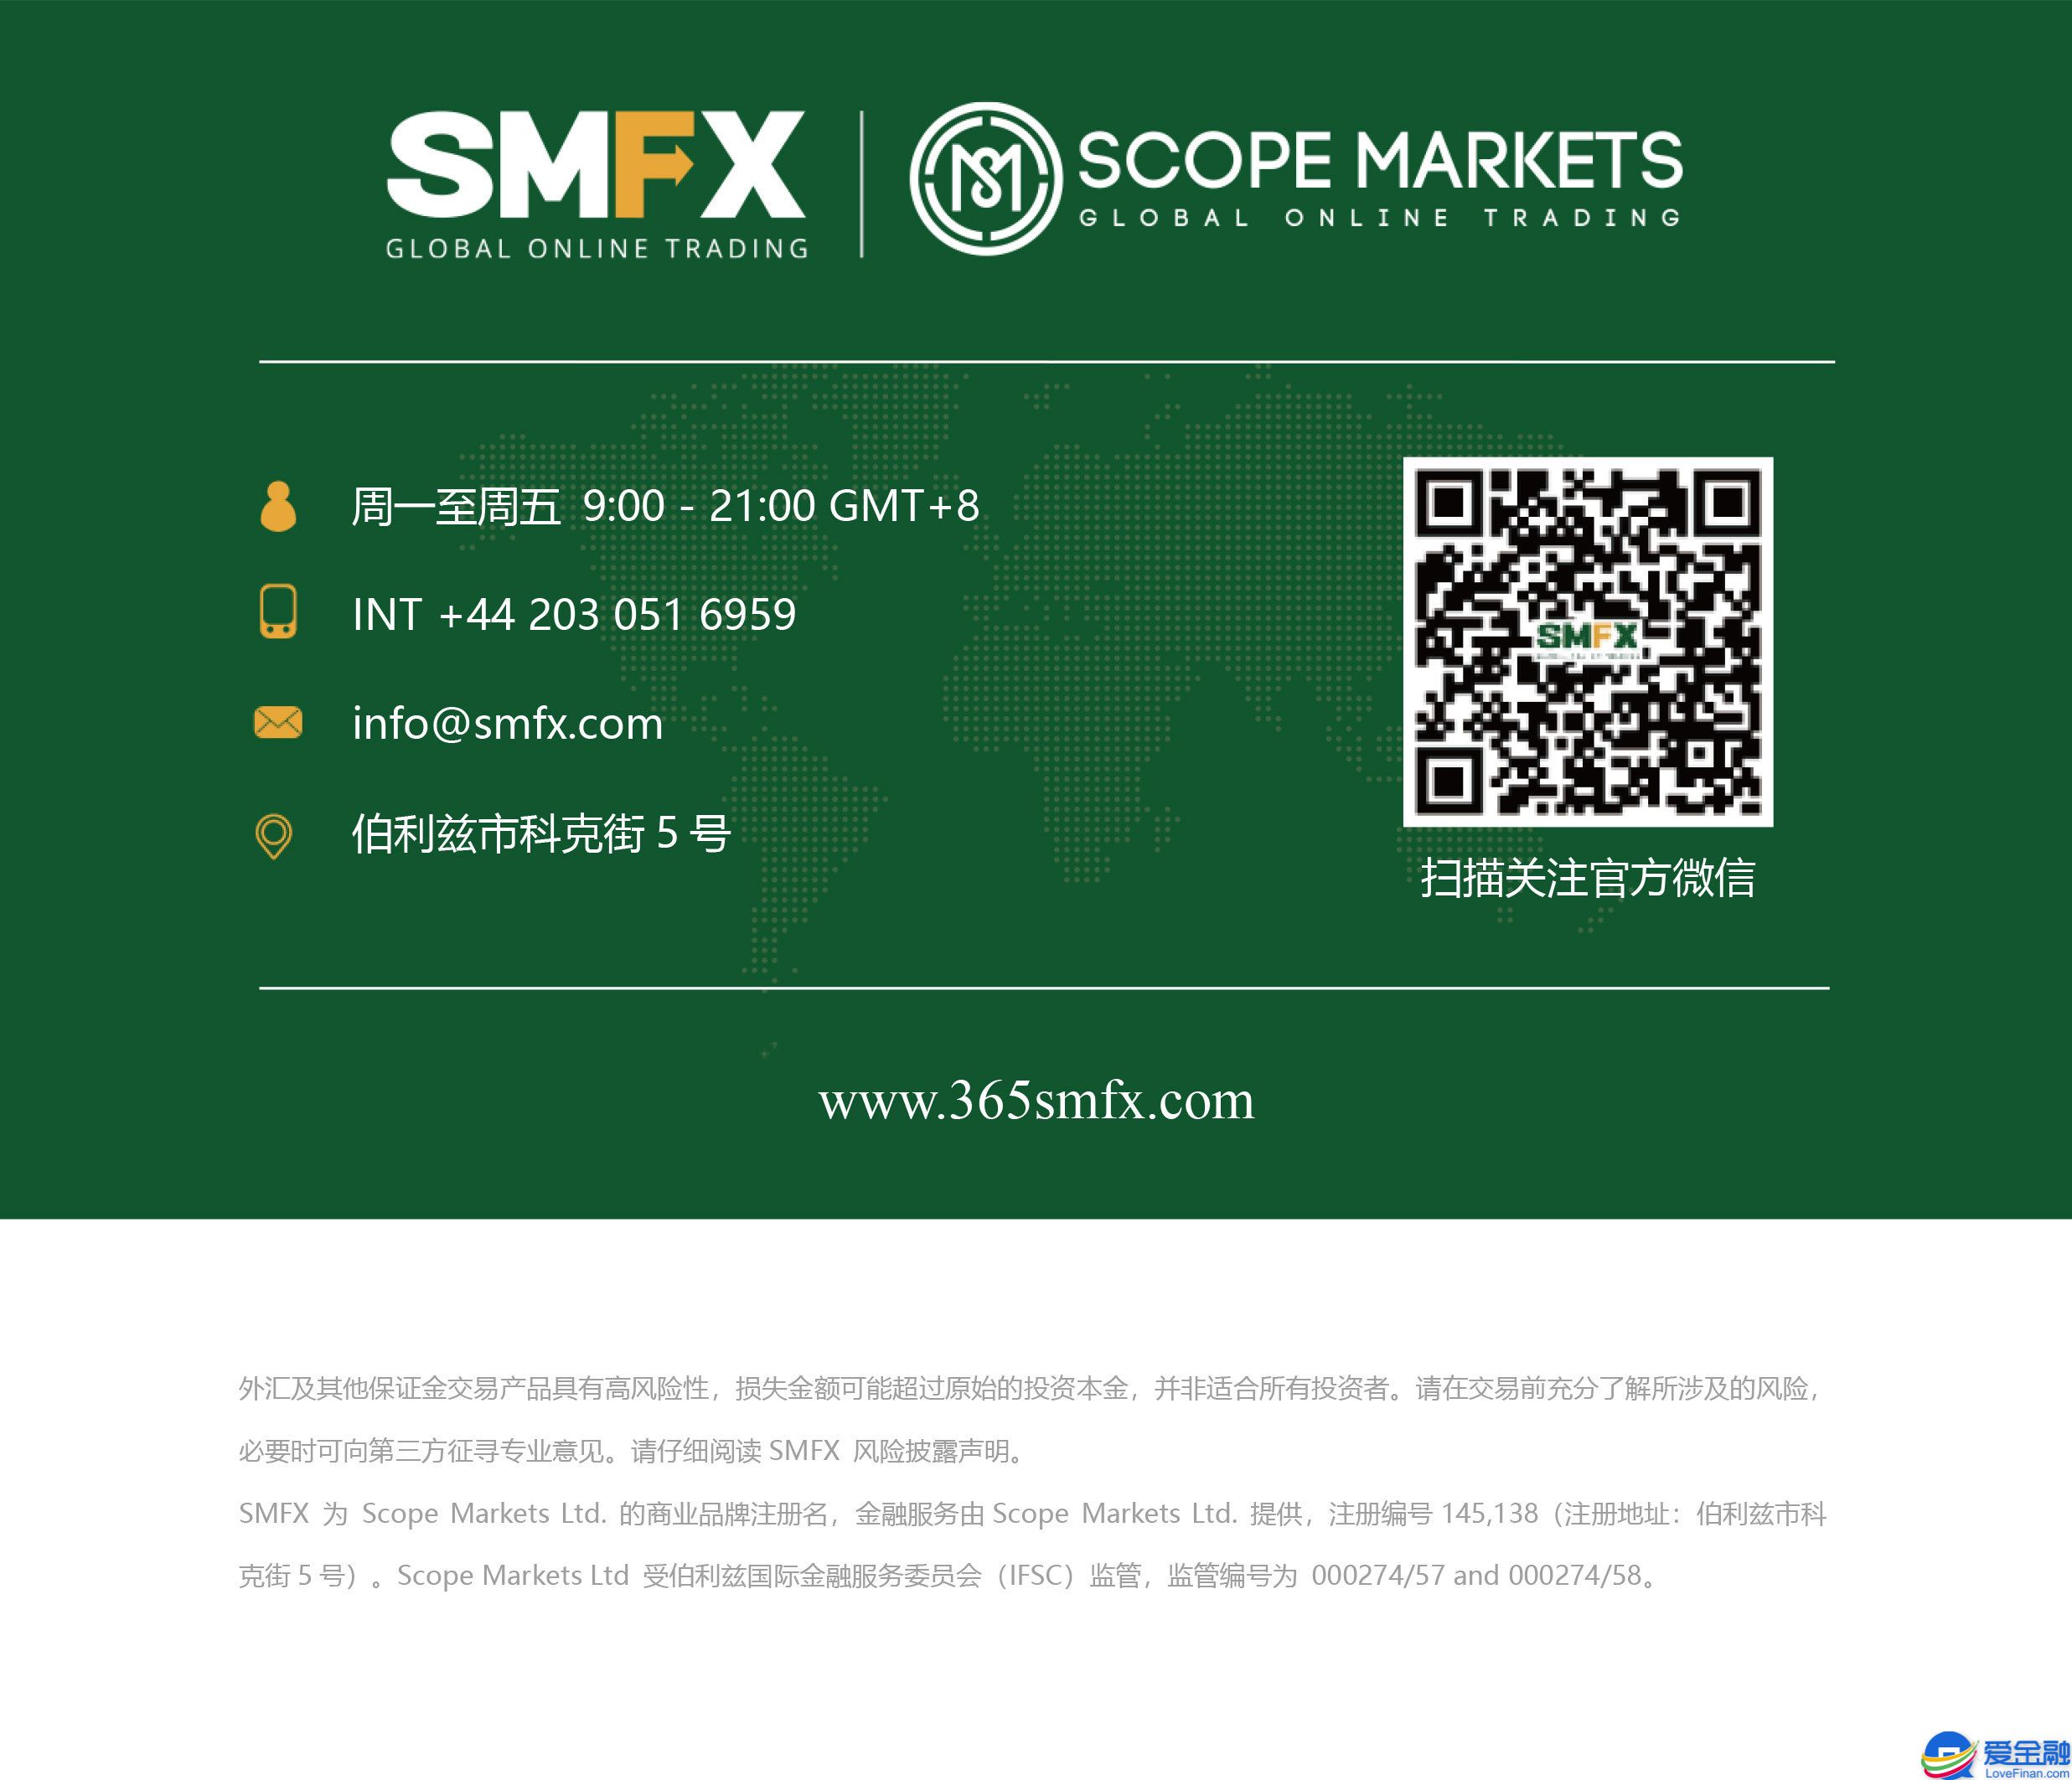 SMFX-尾部公司信息-带官网.jpg